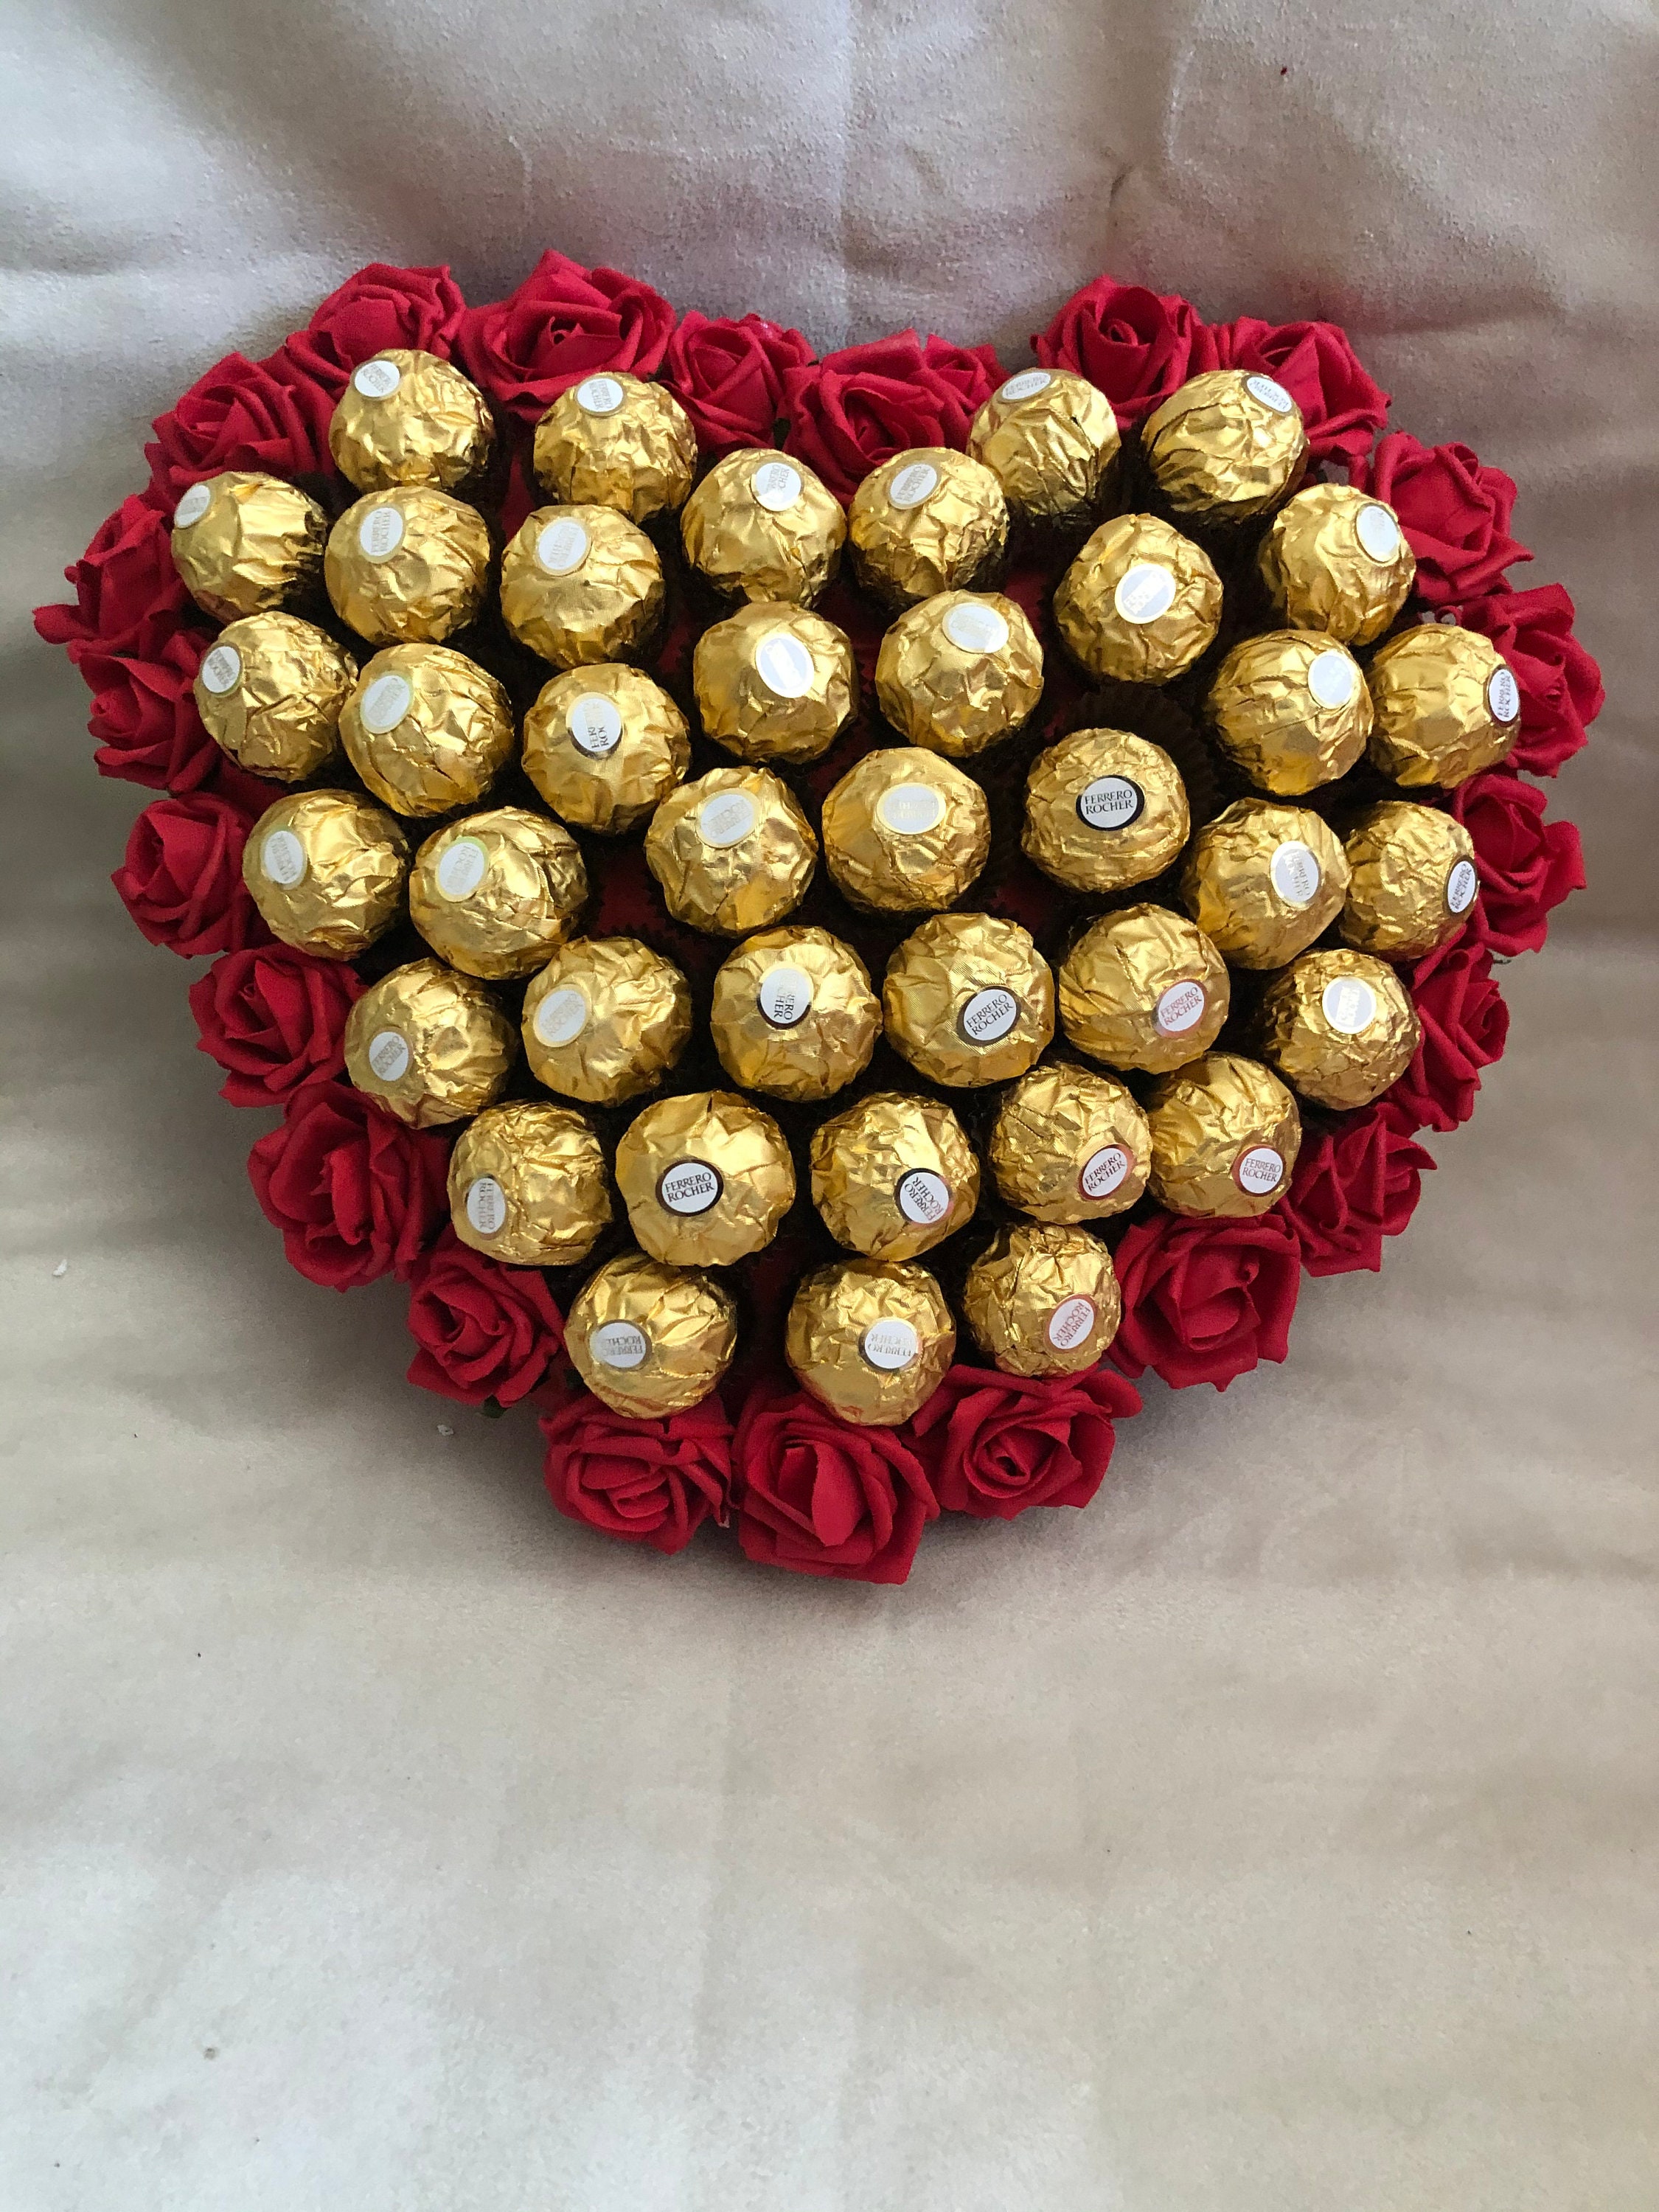 Ferrero Rocher - Per San Valentino condividi un messaggio